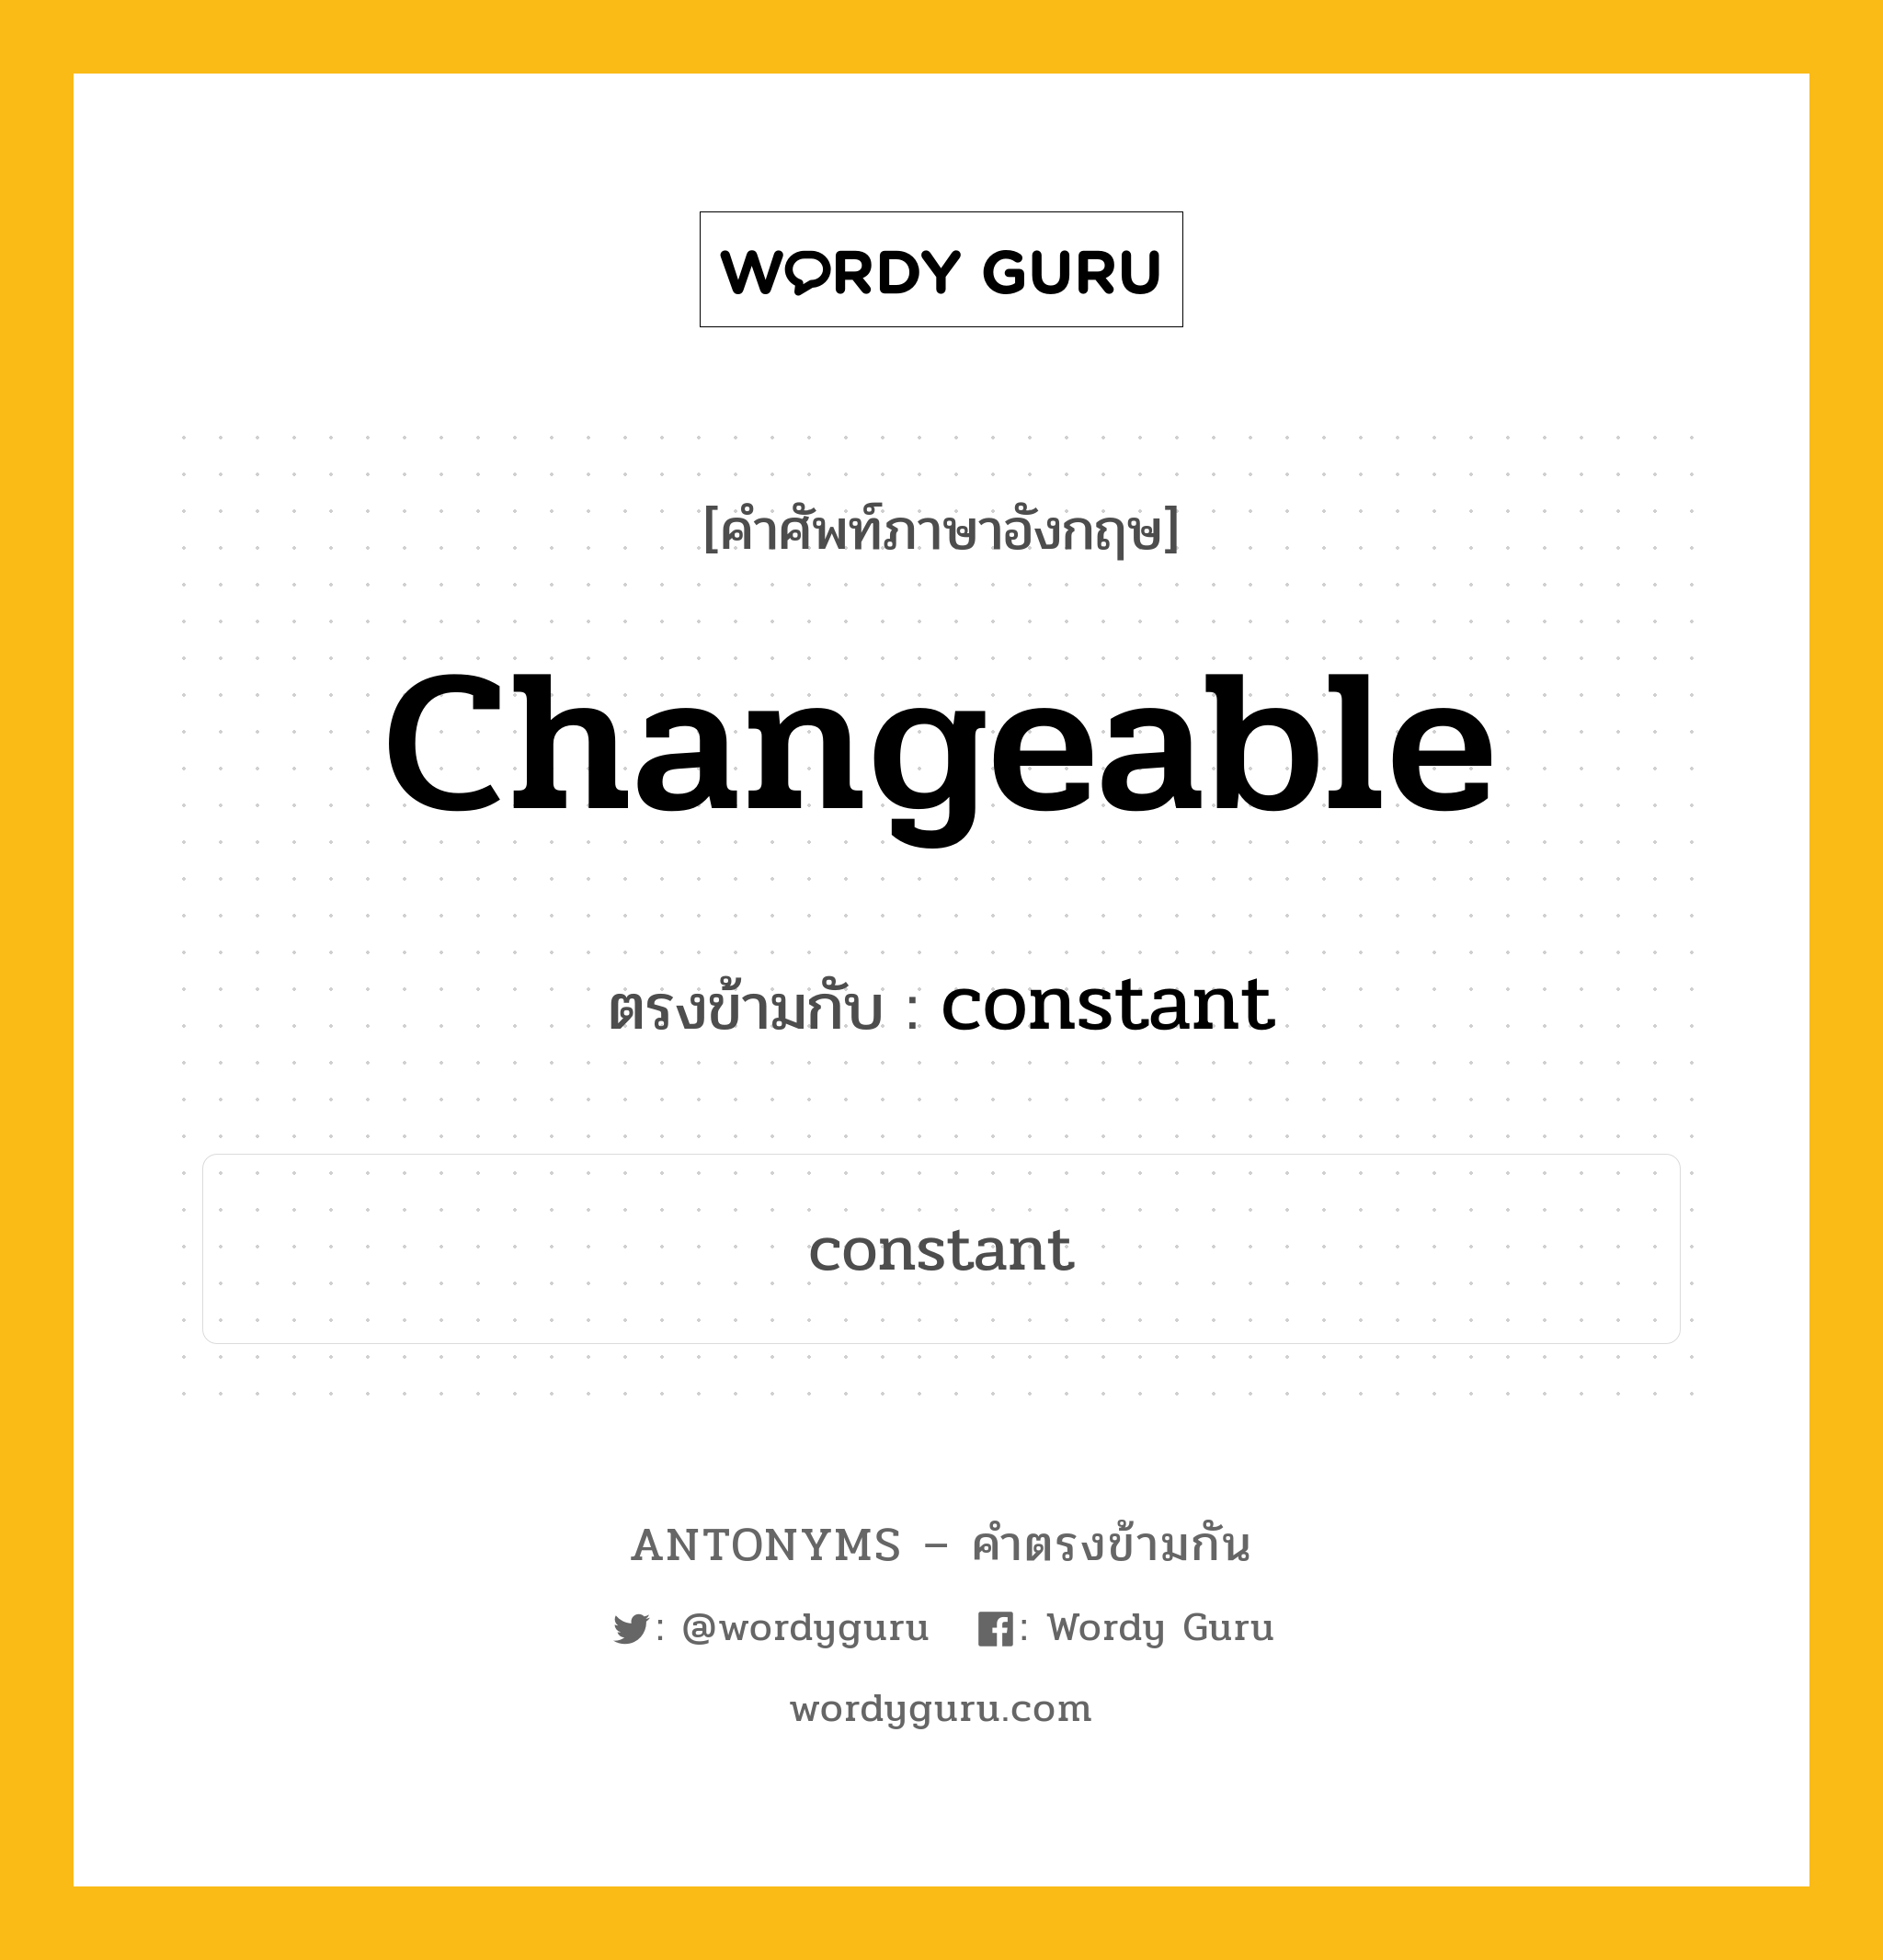 changeable เป็นคำตรงข้ามกับคำไหนบ้าง?, คำศัพท์ภาษาอังกฤษ changeable ตรงข้ามกับ constant หมวด constant